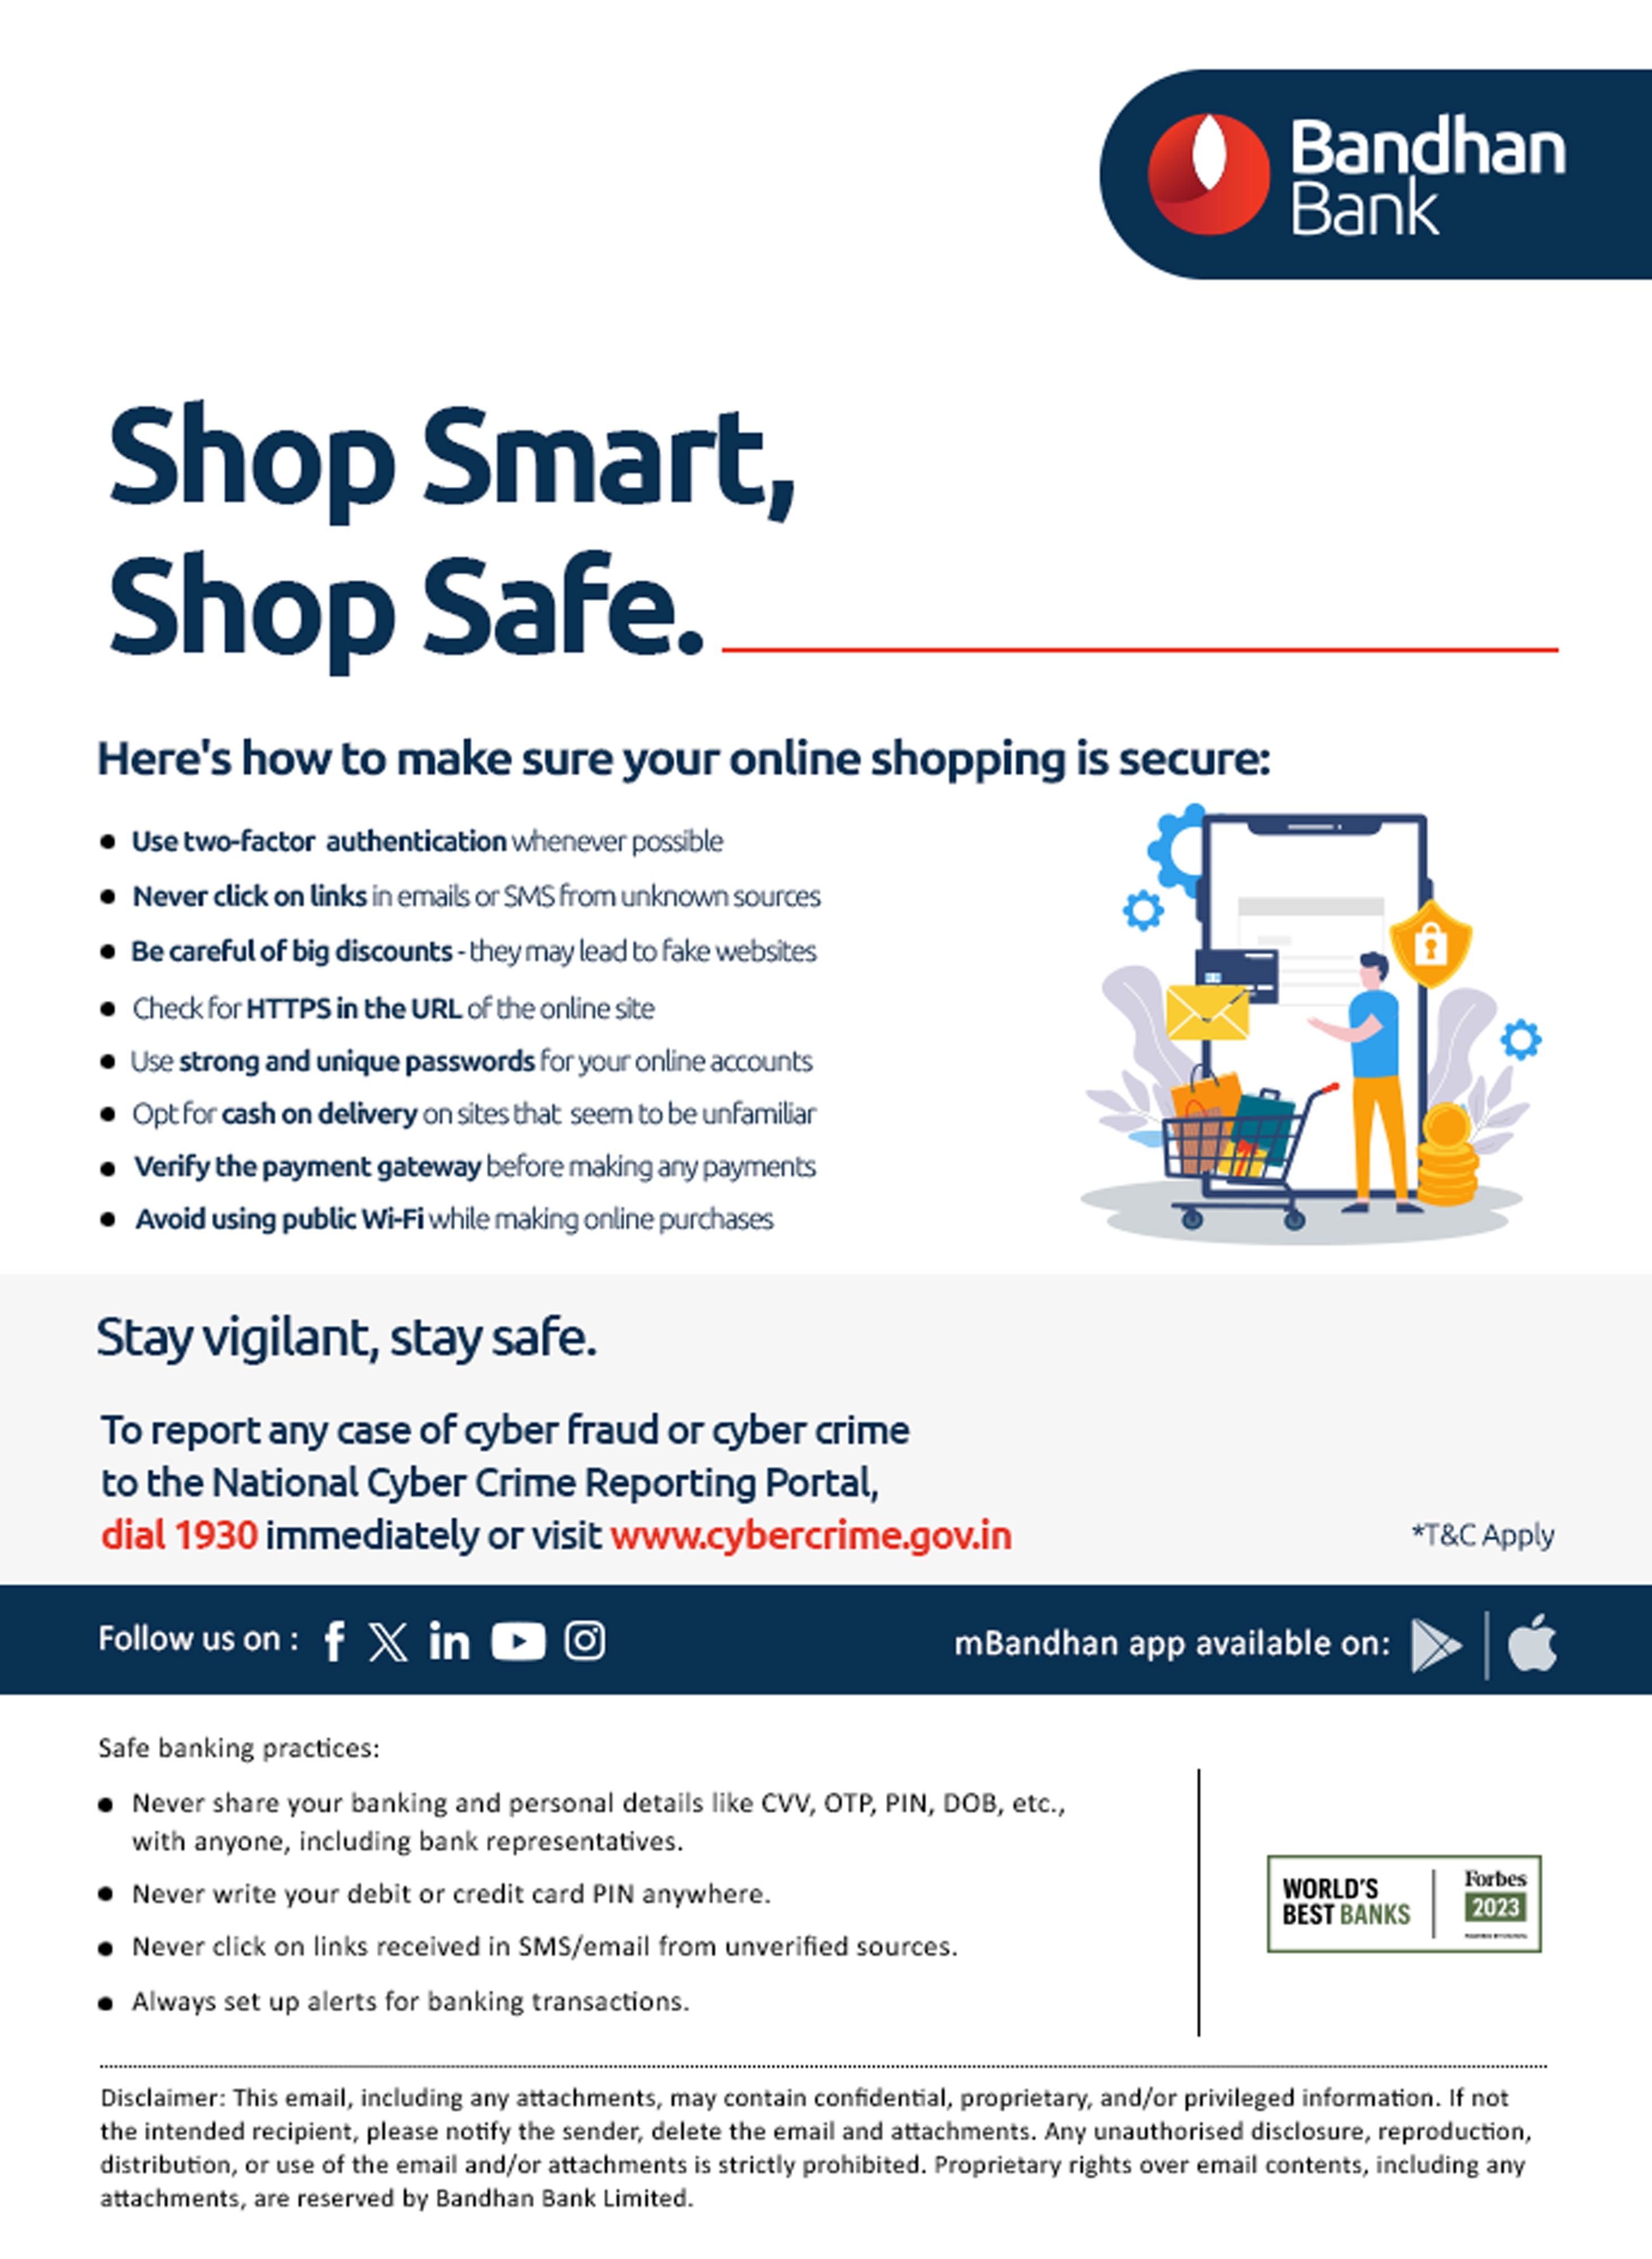 Tips for safe online shopping - Bandhan Bank